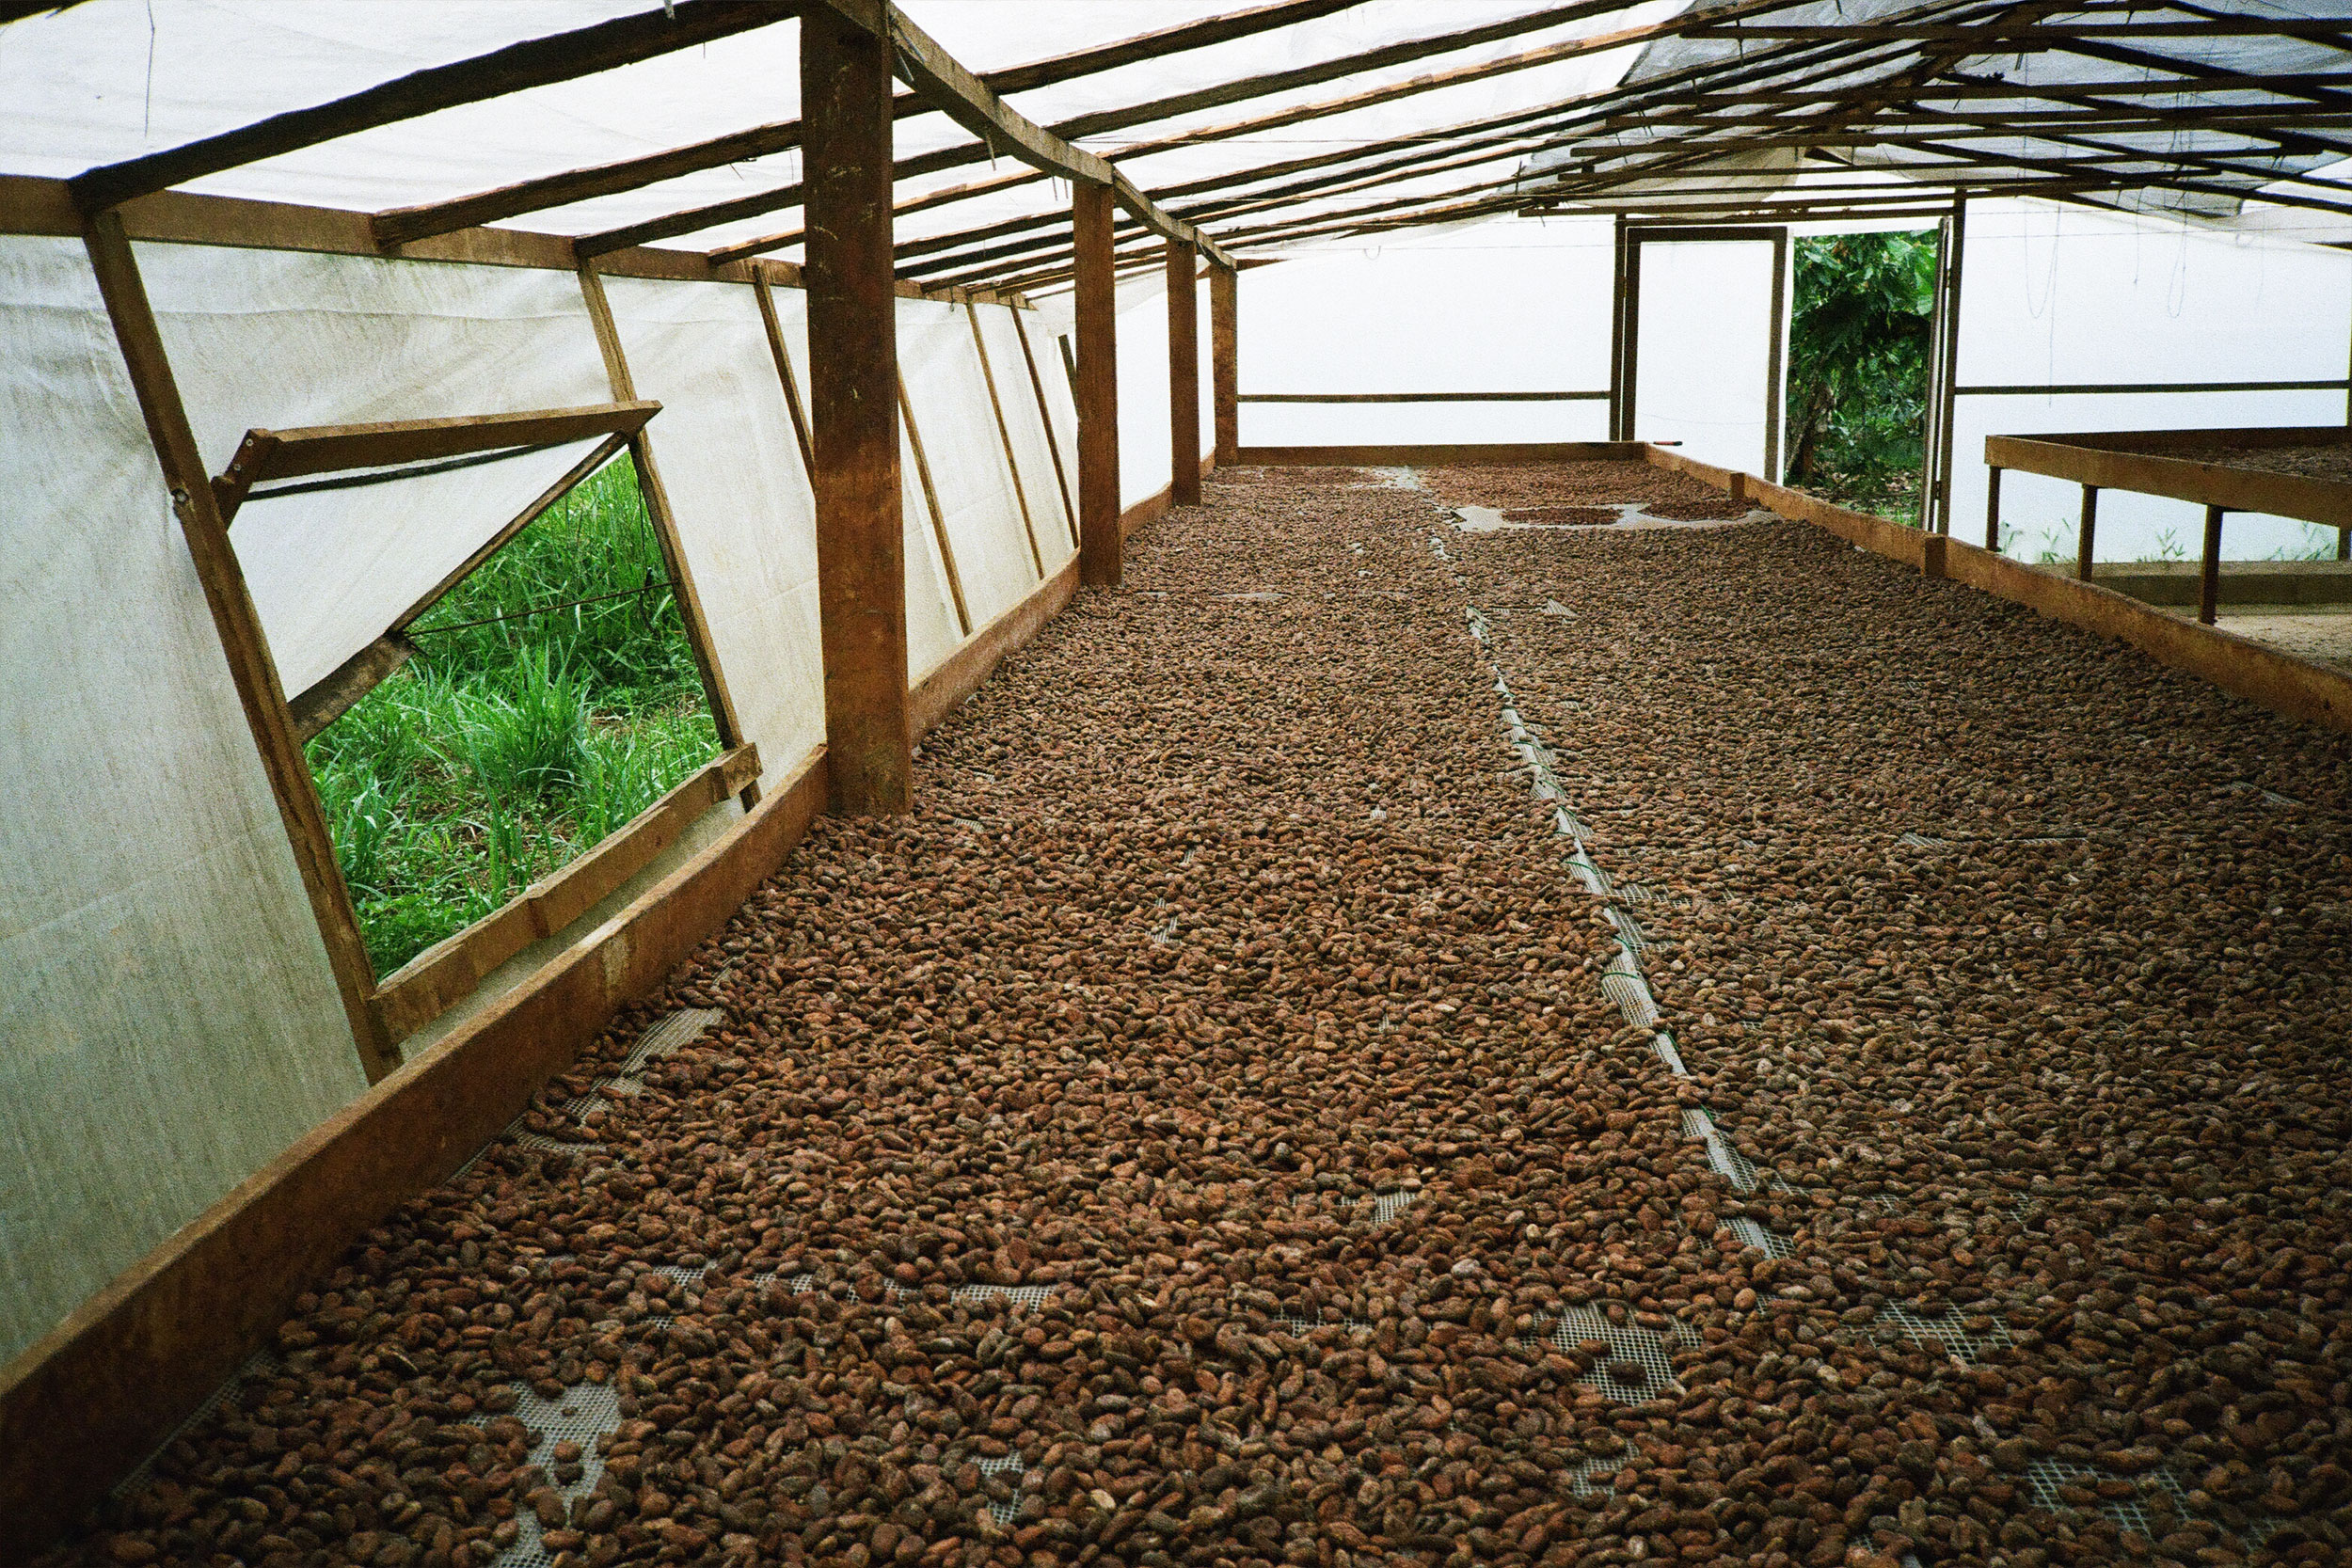 Fèves de cacao séchées attendant d'être transformées en chocolat.